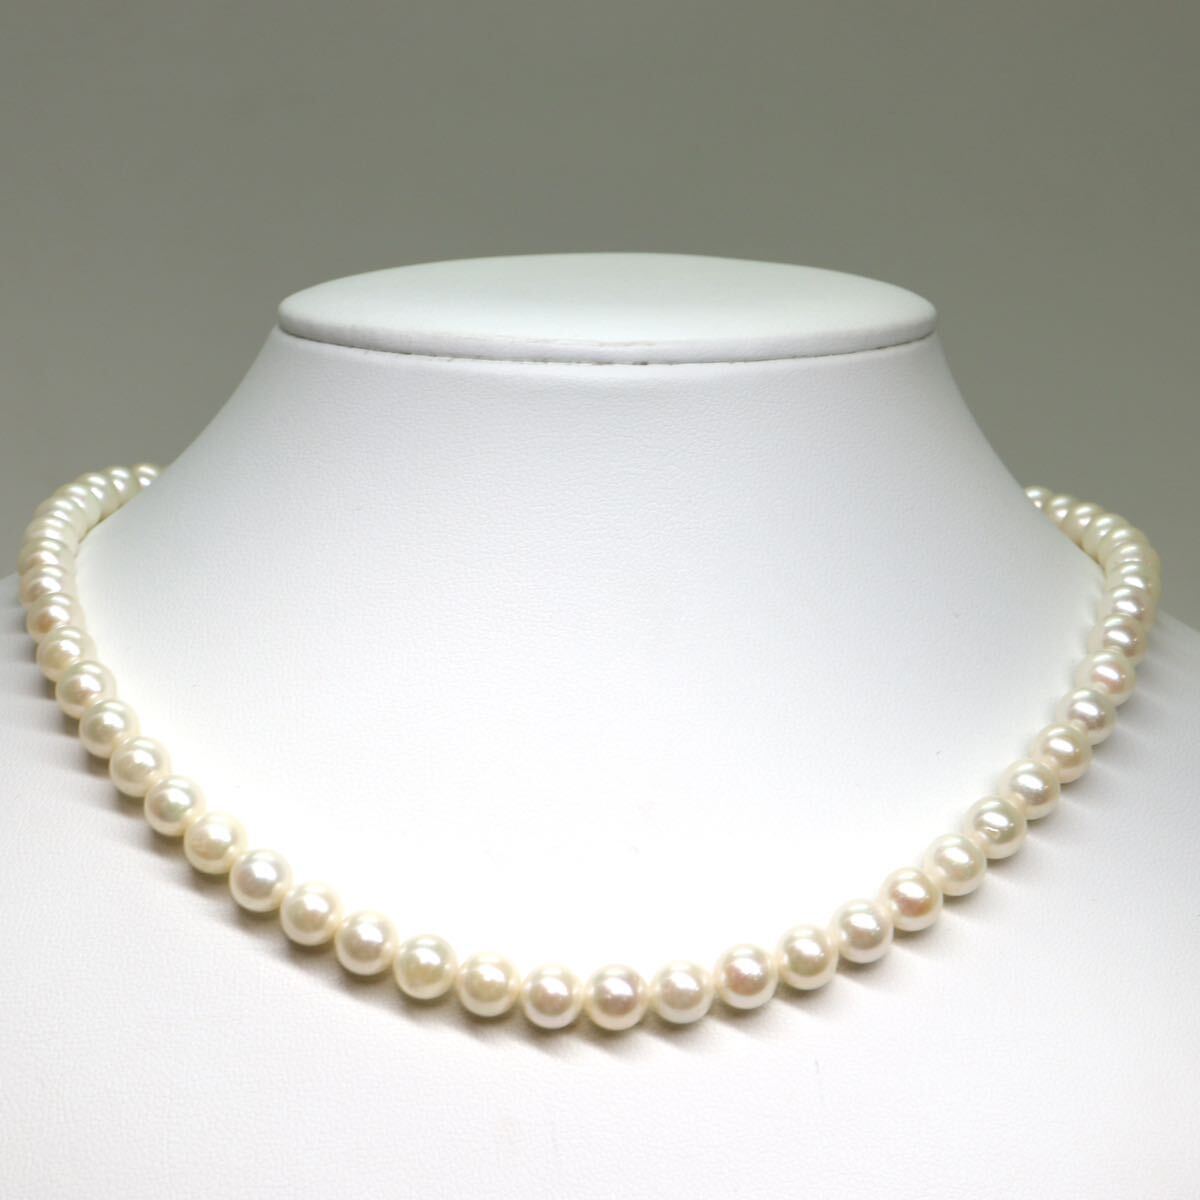 《アコヤ本真珠ネックレス》M 約6.5-7.0mm珠 30.4g 約42cm pearl necklace ジュエリー jewelry DA0/DA5_画像2